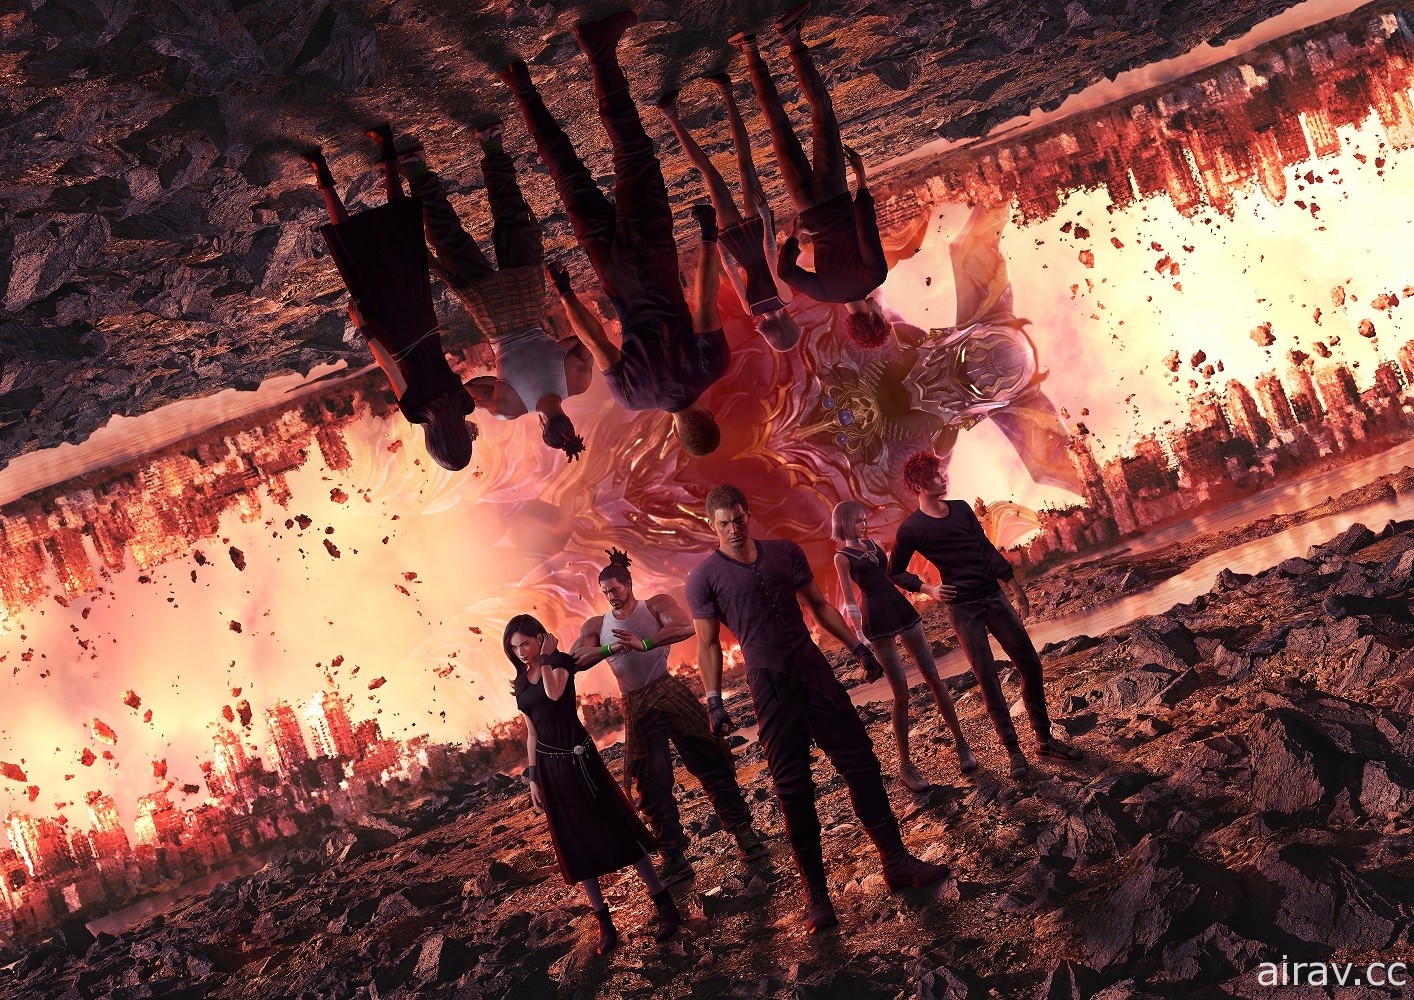 《乐园的异乡人 Final Fantasy 起源》下载版 75 折限时优惠实施中